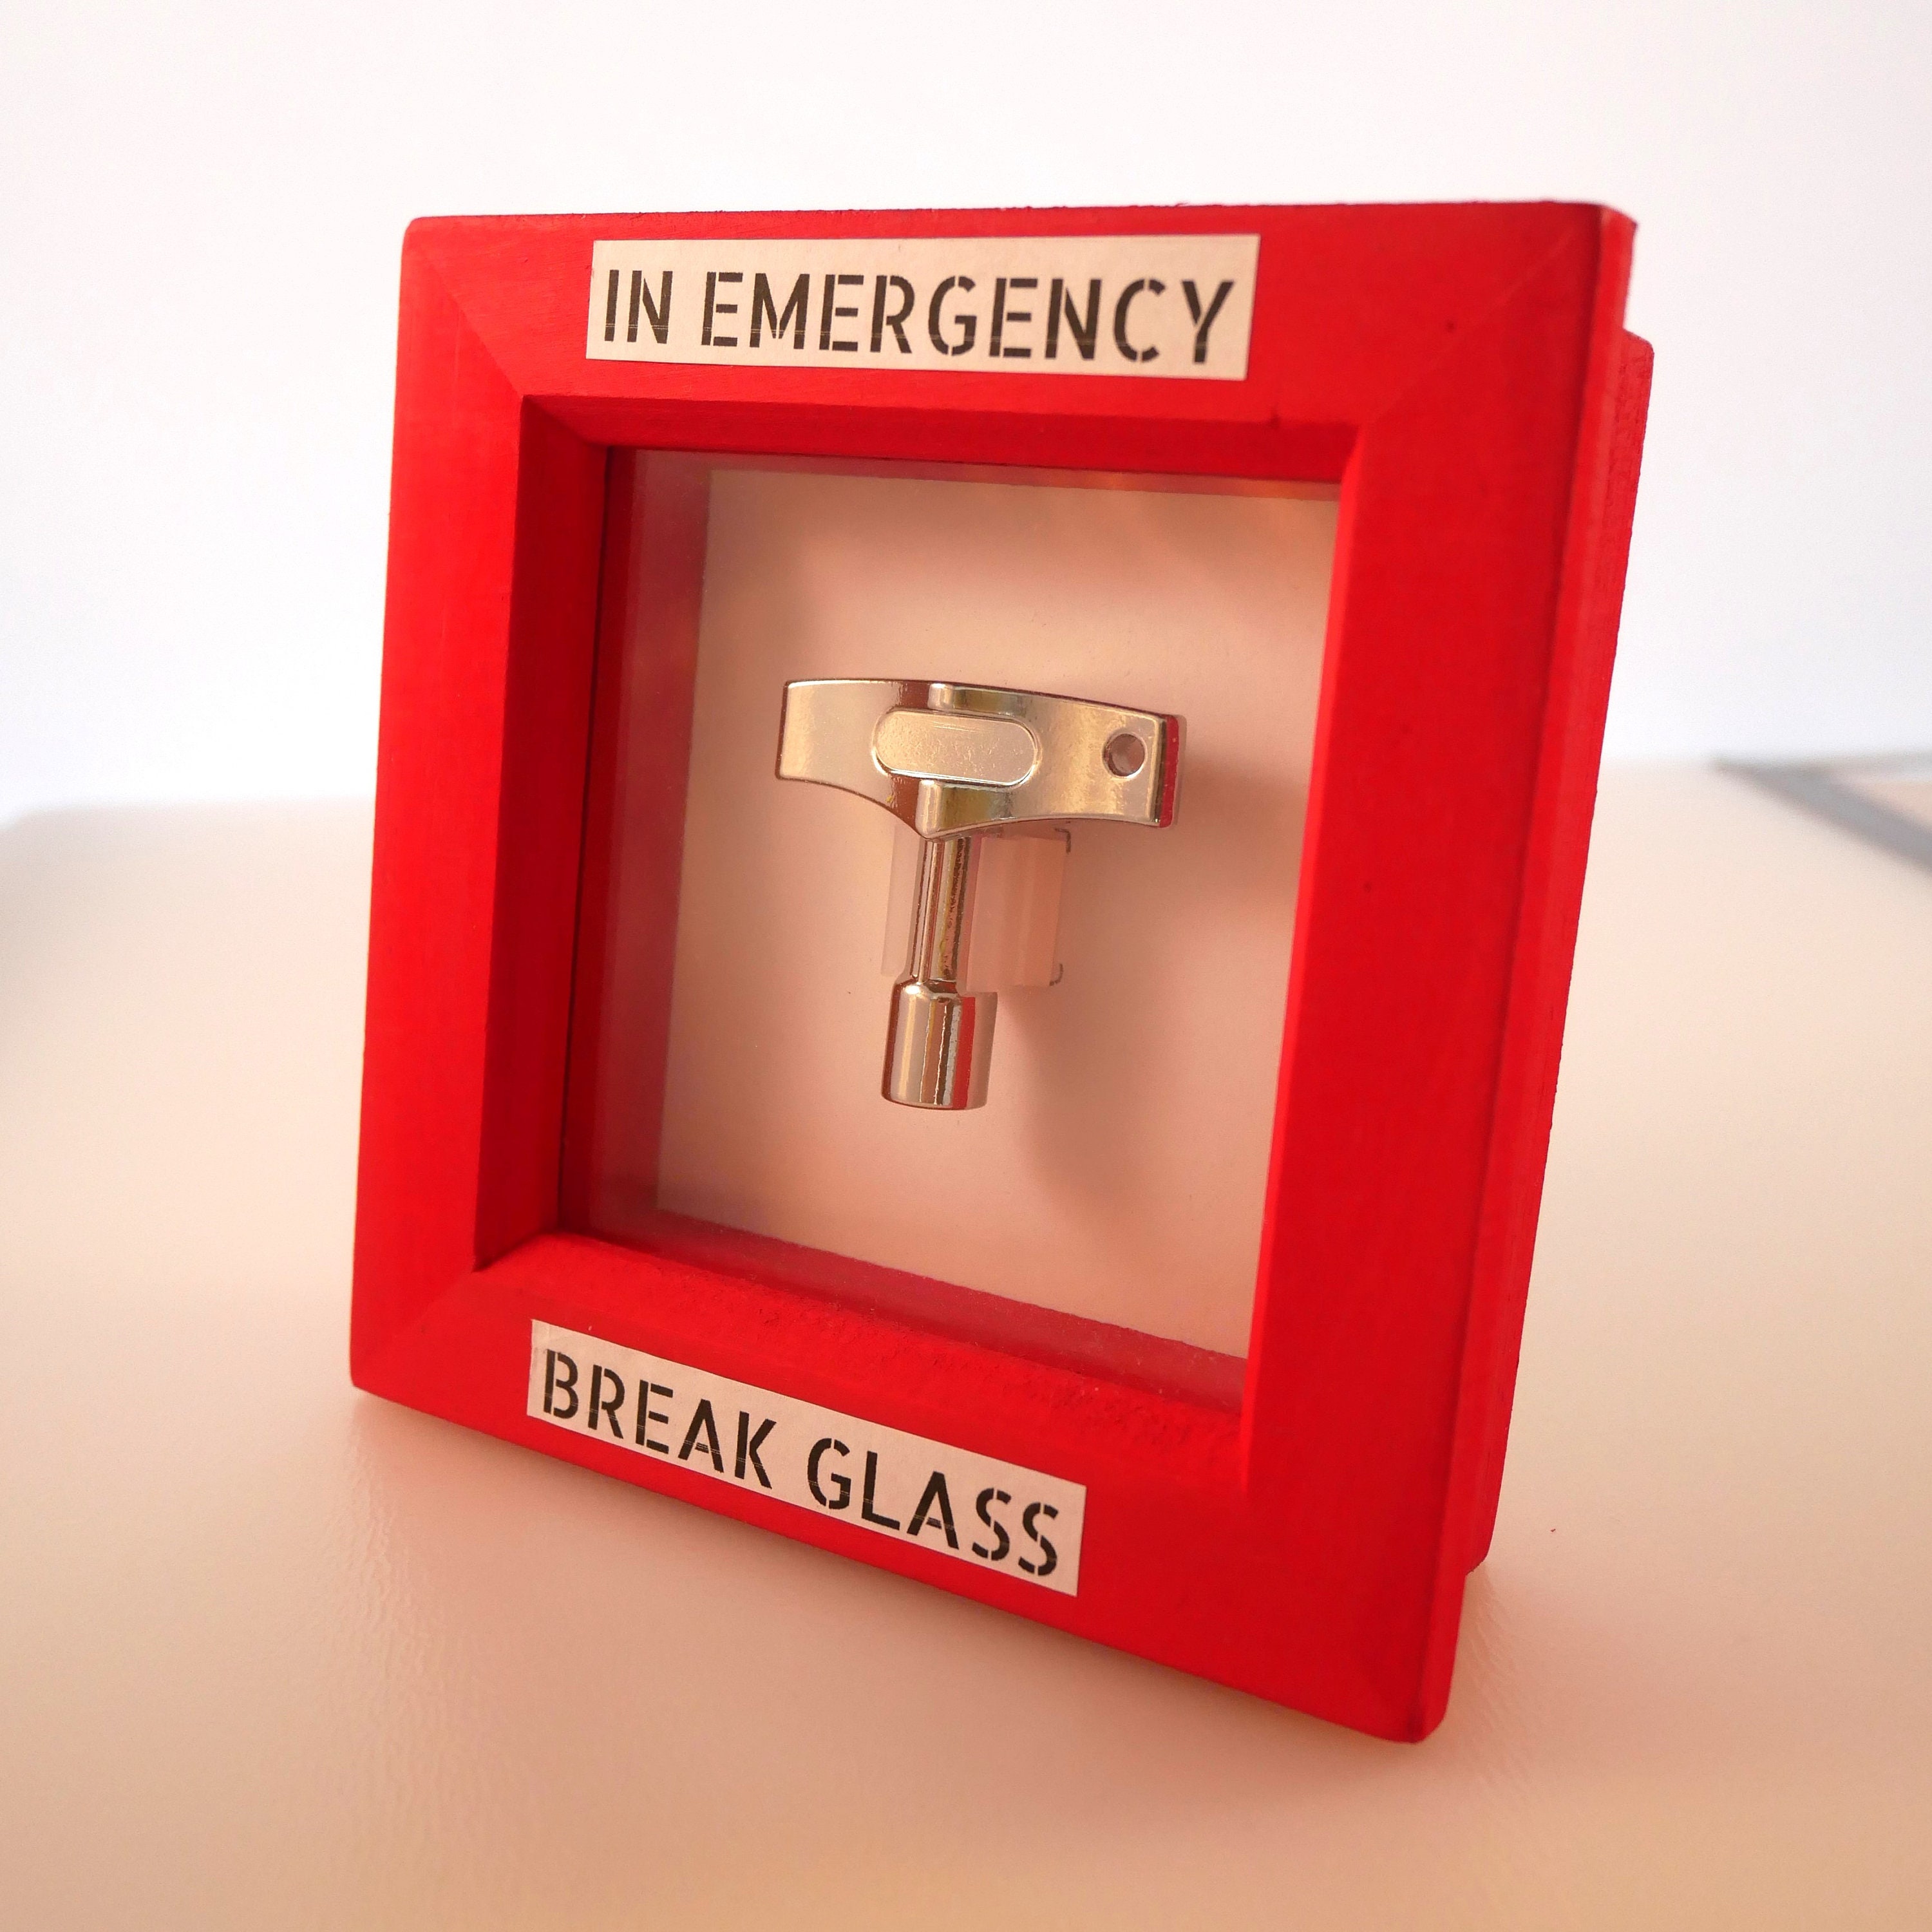 LIFE HAMMER EMERGENCY GLASS BREAKER 3D model 3D printable